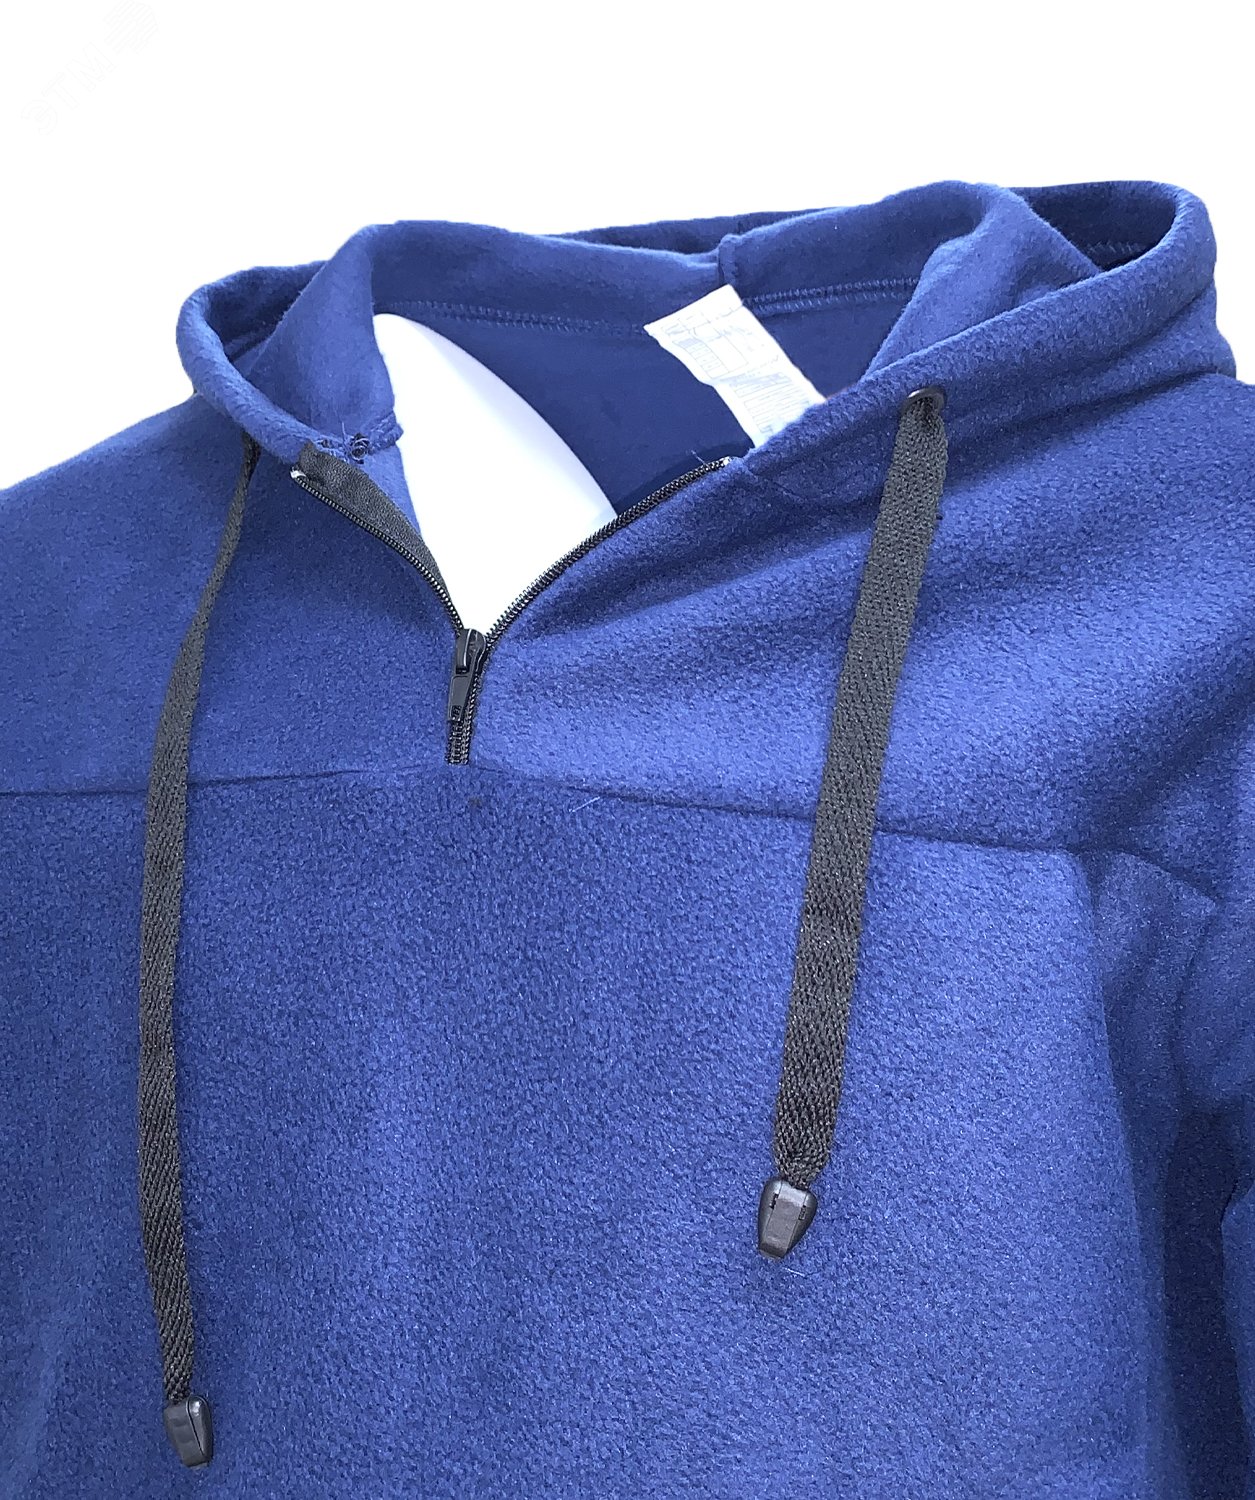 Куртка Etalon Travel TM Sprut с капюшоном, цвет темно-синий 56-58 112-116/182-188 130793 Эталон-Спецодежда - превью 3